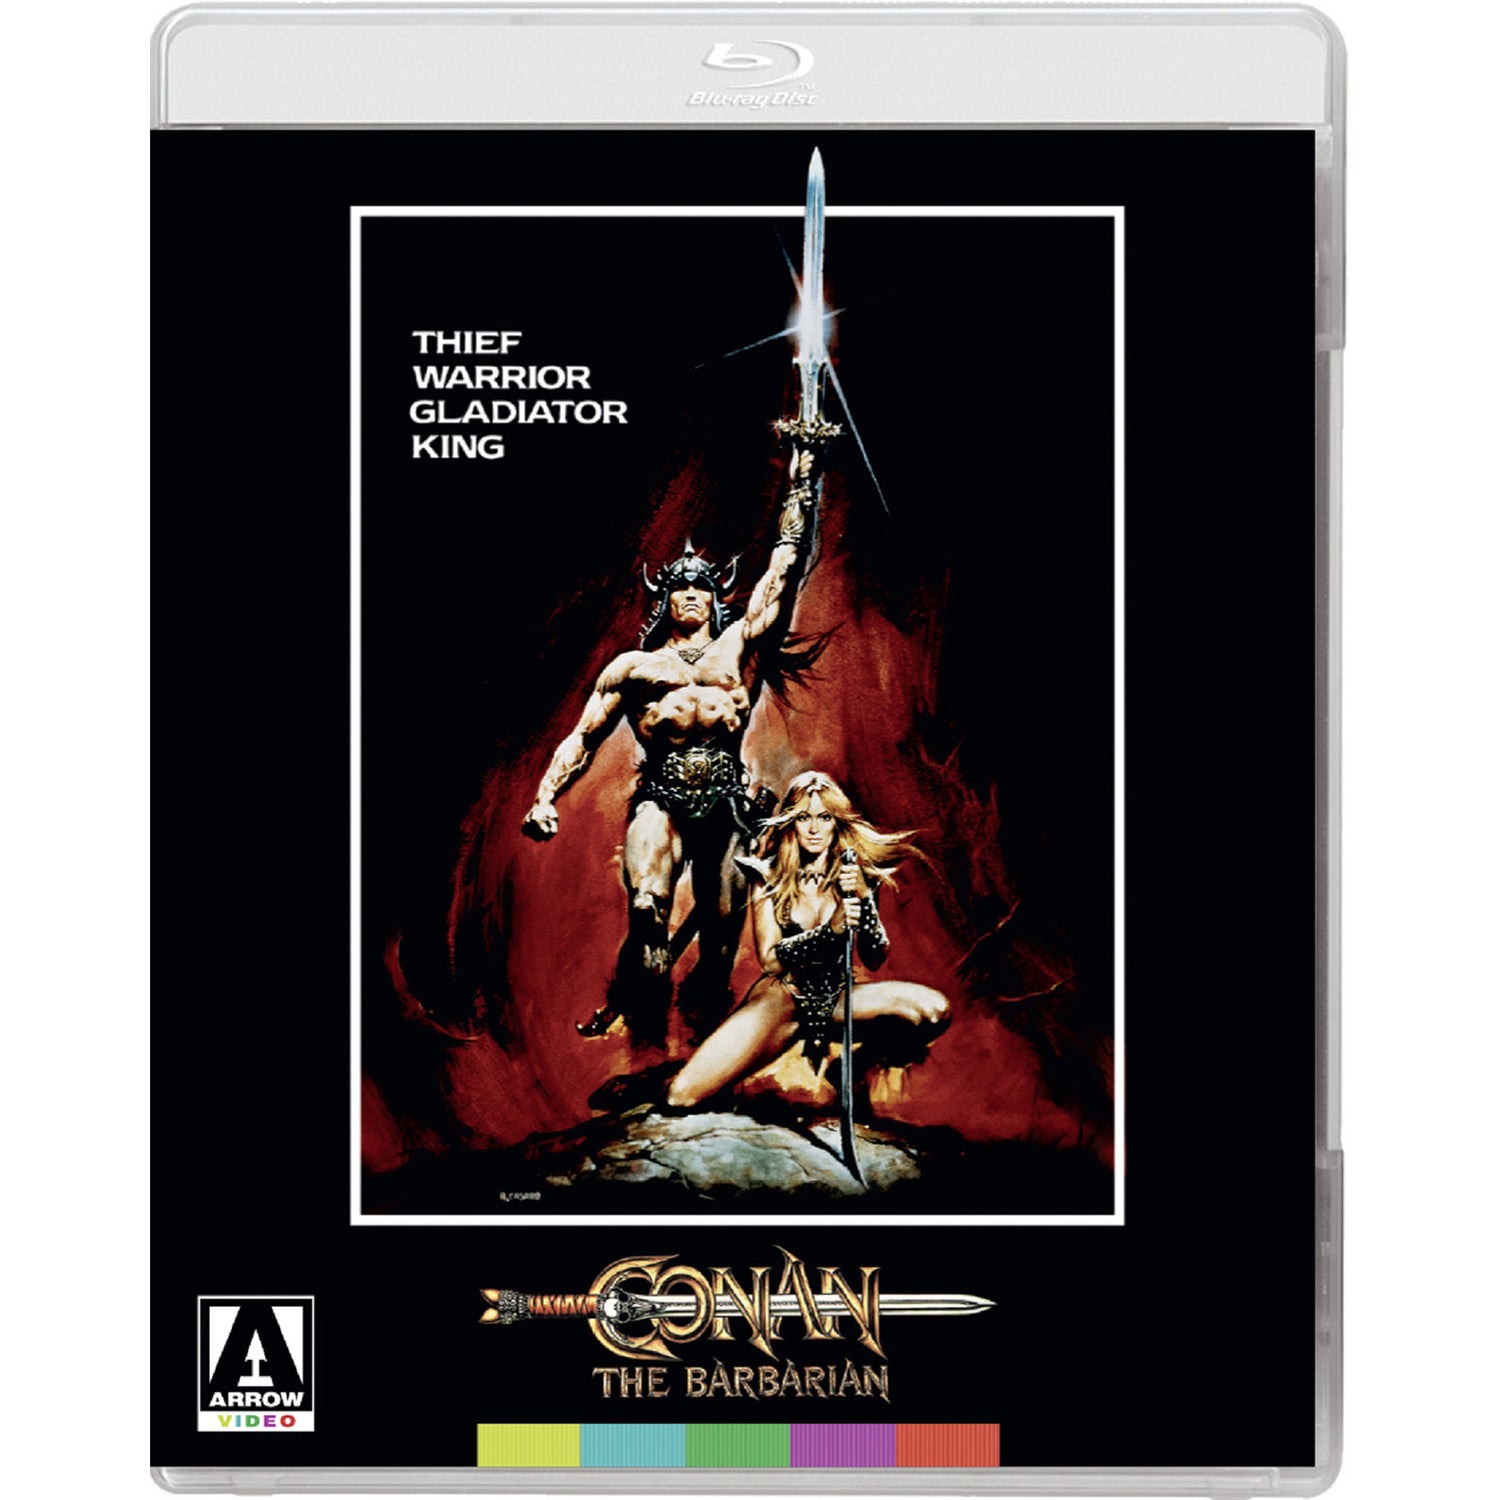 Conan The Barbarian Blu-ray